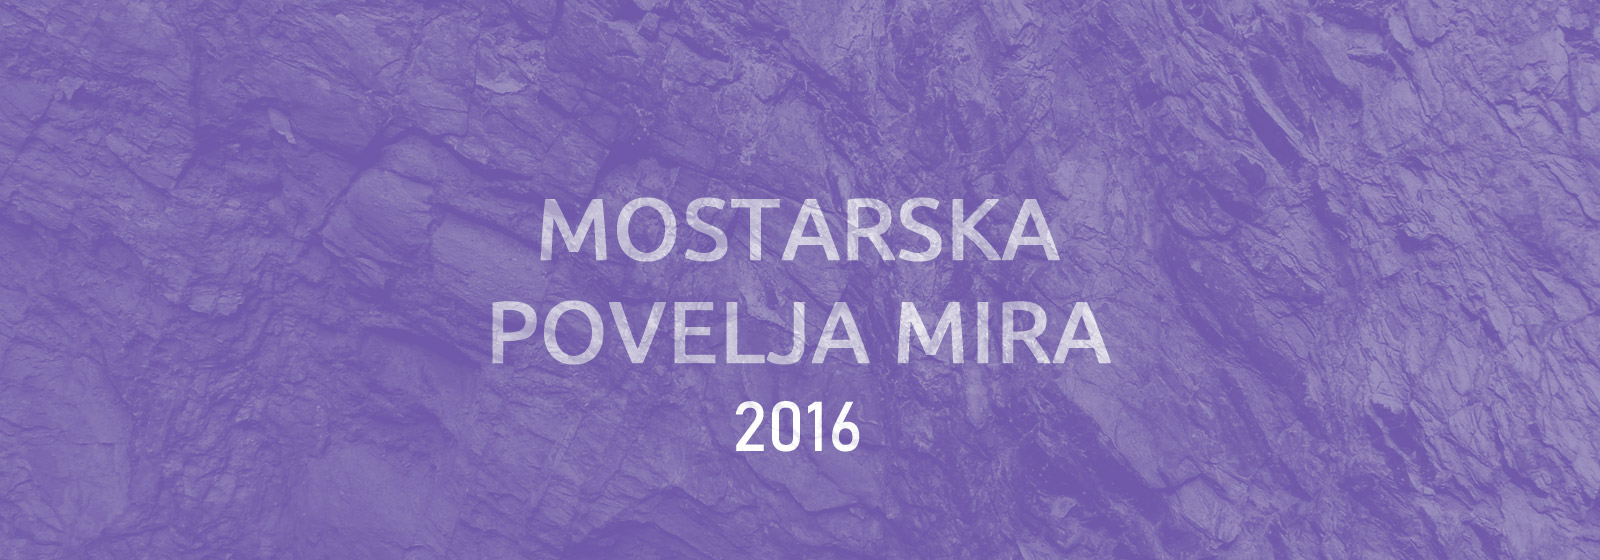 Mostarska povelja mira 2016: Mostar je oduvijek bio grad zajedništva i takav mora ostati